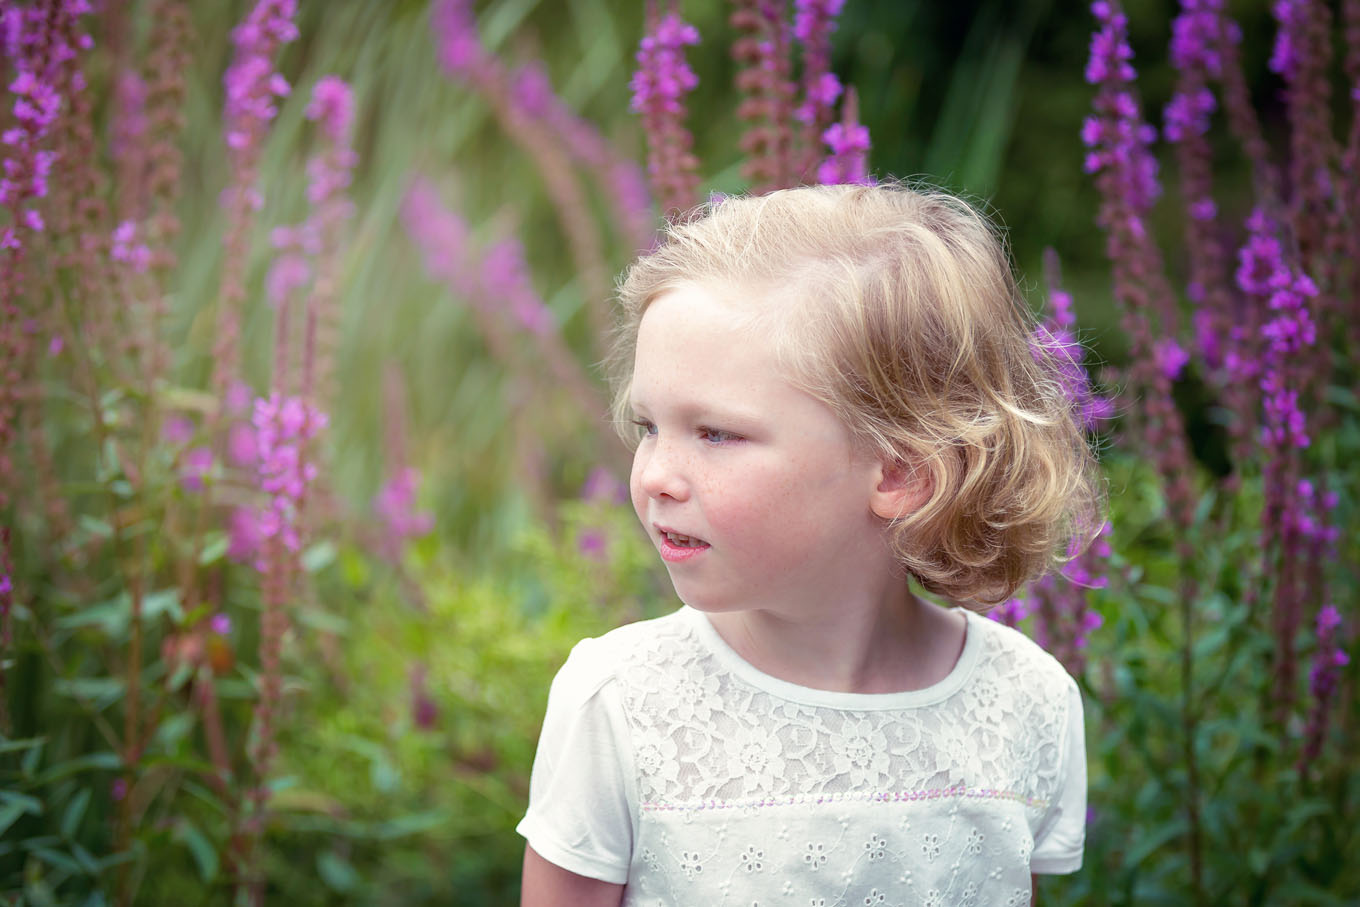 Summer outdoor portrait of a little girl